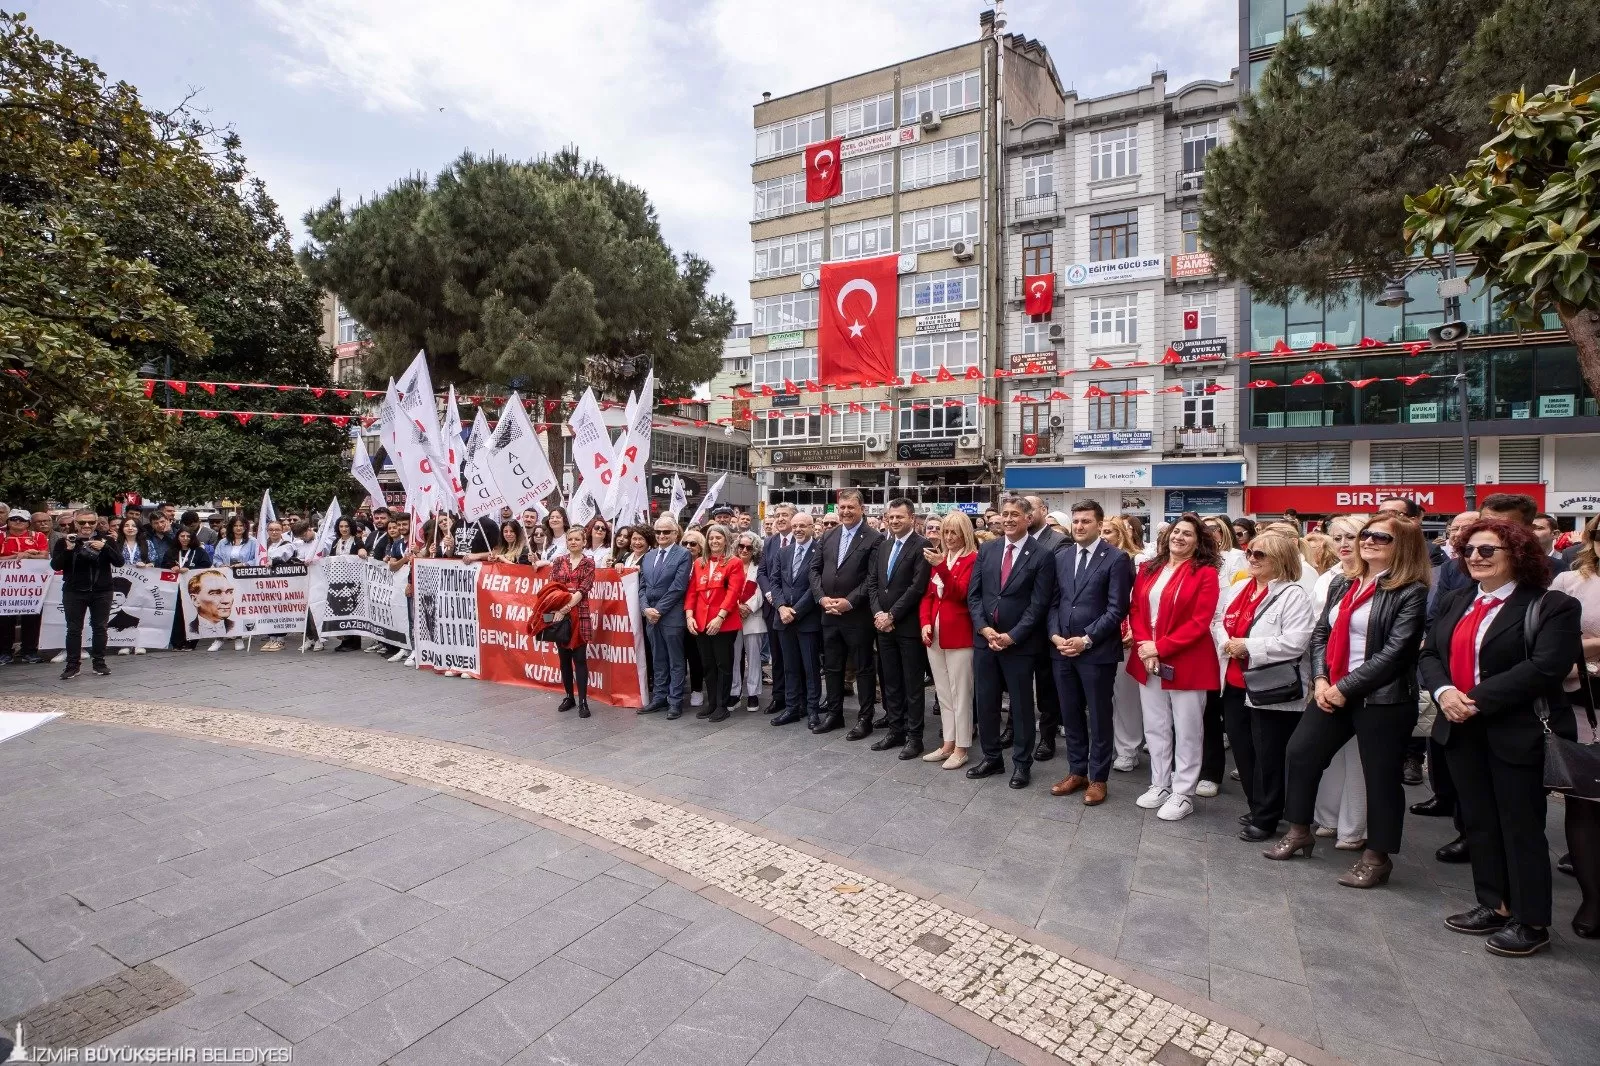 İzmir Büyükşehir Belediye Başkanı Dr. Cemil Tugay, Cumhuriyet Halk Partisi (CHP) Samsun İl Başkanlığı'nın 19 Mayıs'ın 105. yıl dönümü için düzenlediği törene katıldı. 